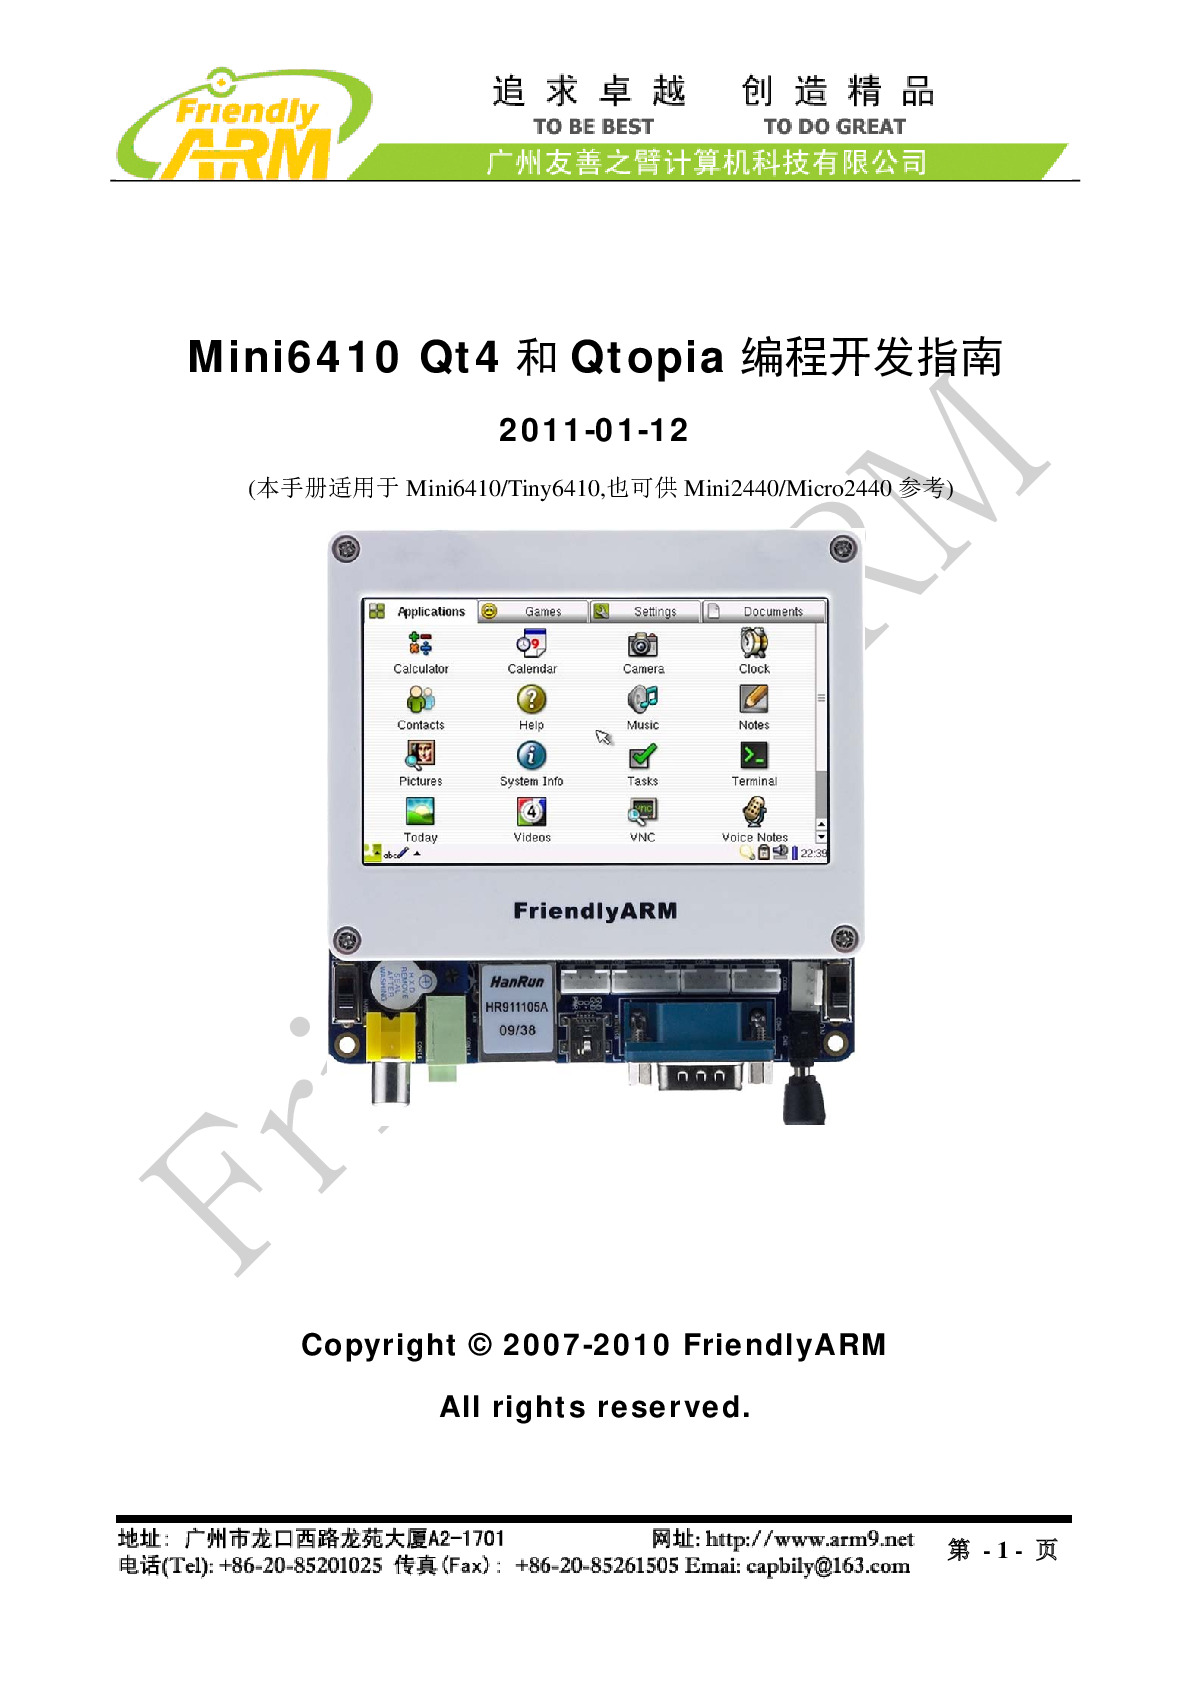 Mini6410 Qt4和Qtopia编程开发指南-20110112